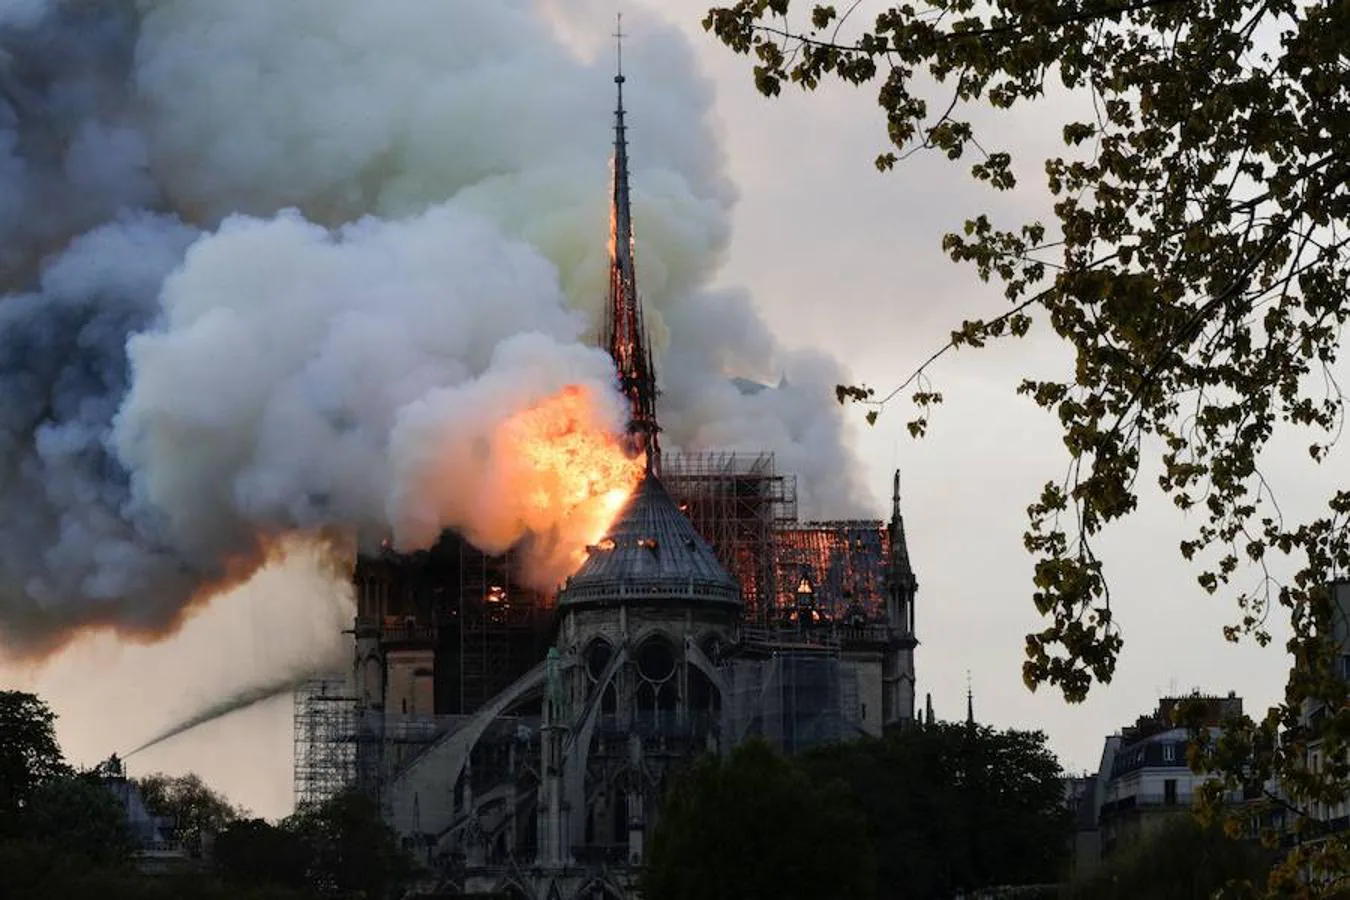 El devastador incendio que consume la catedral de Notre Dame de París, en imágenes